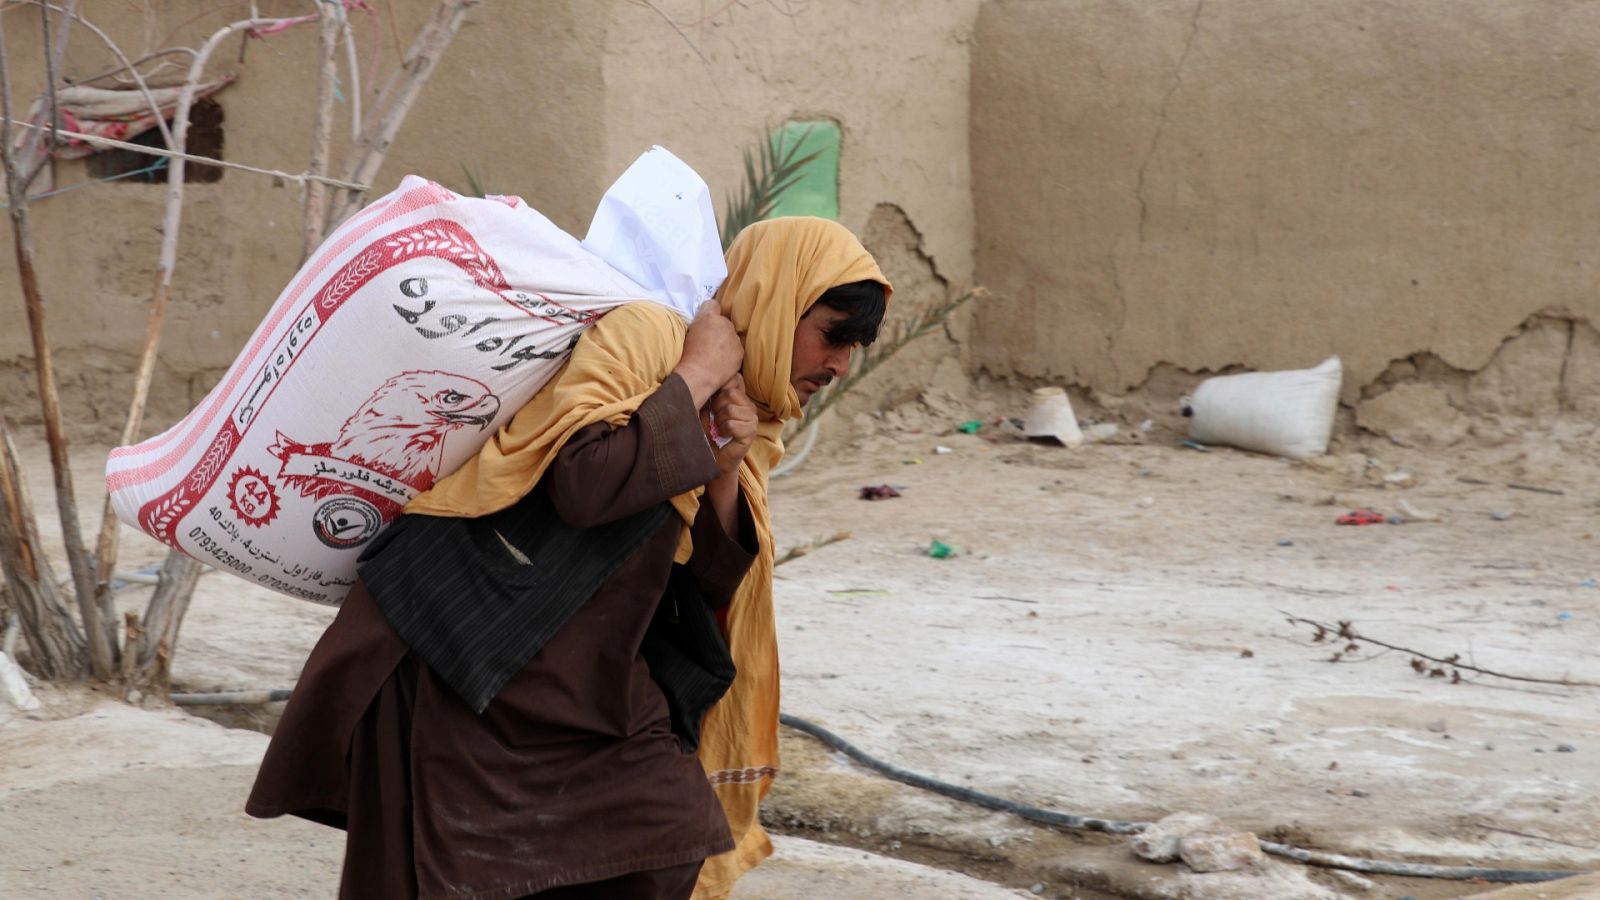 Una persona carga con su ración de alimento, distribuida por la Afghan Charity Foundation en Kandahar, Afganistán